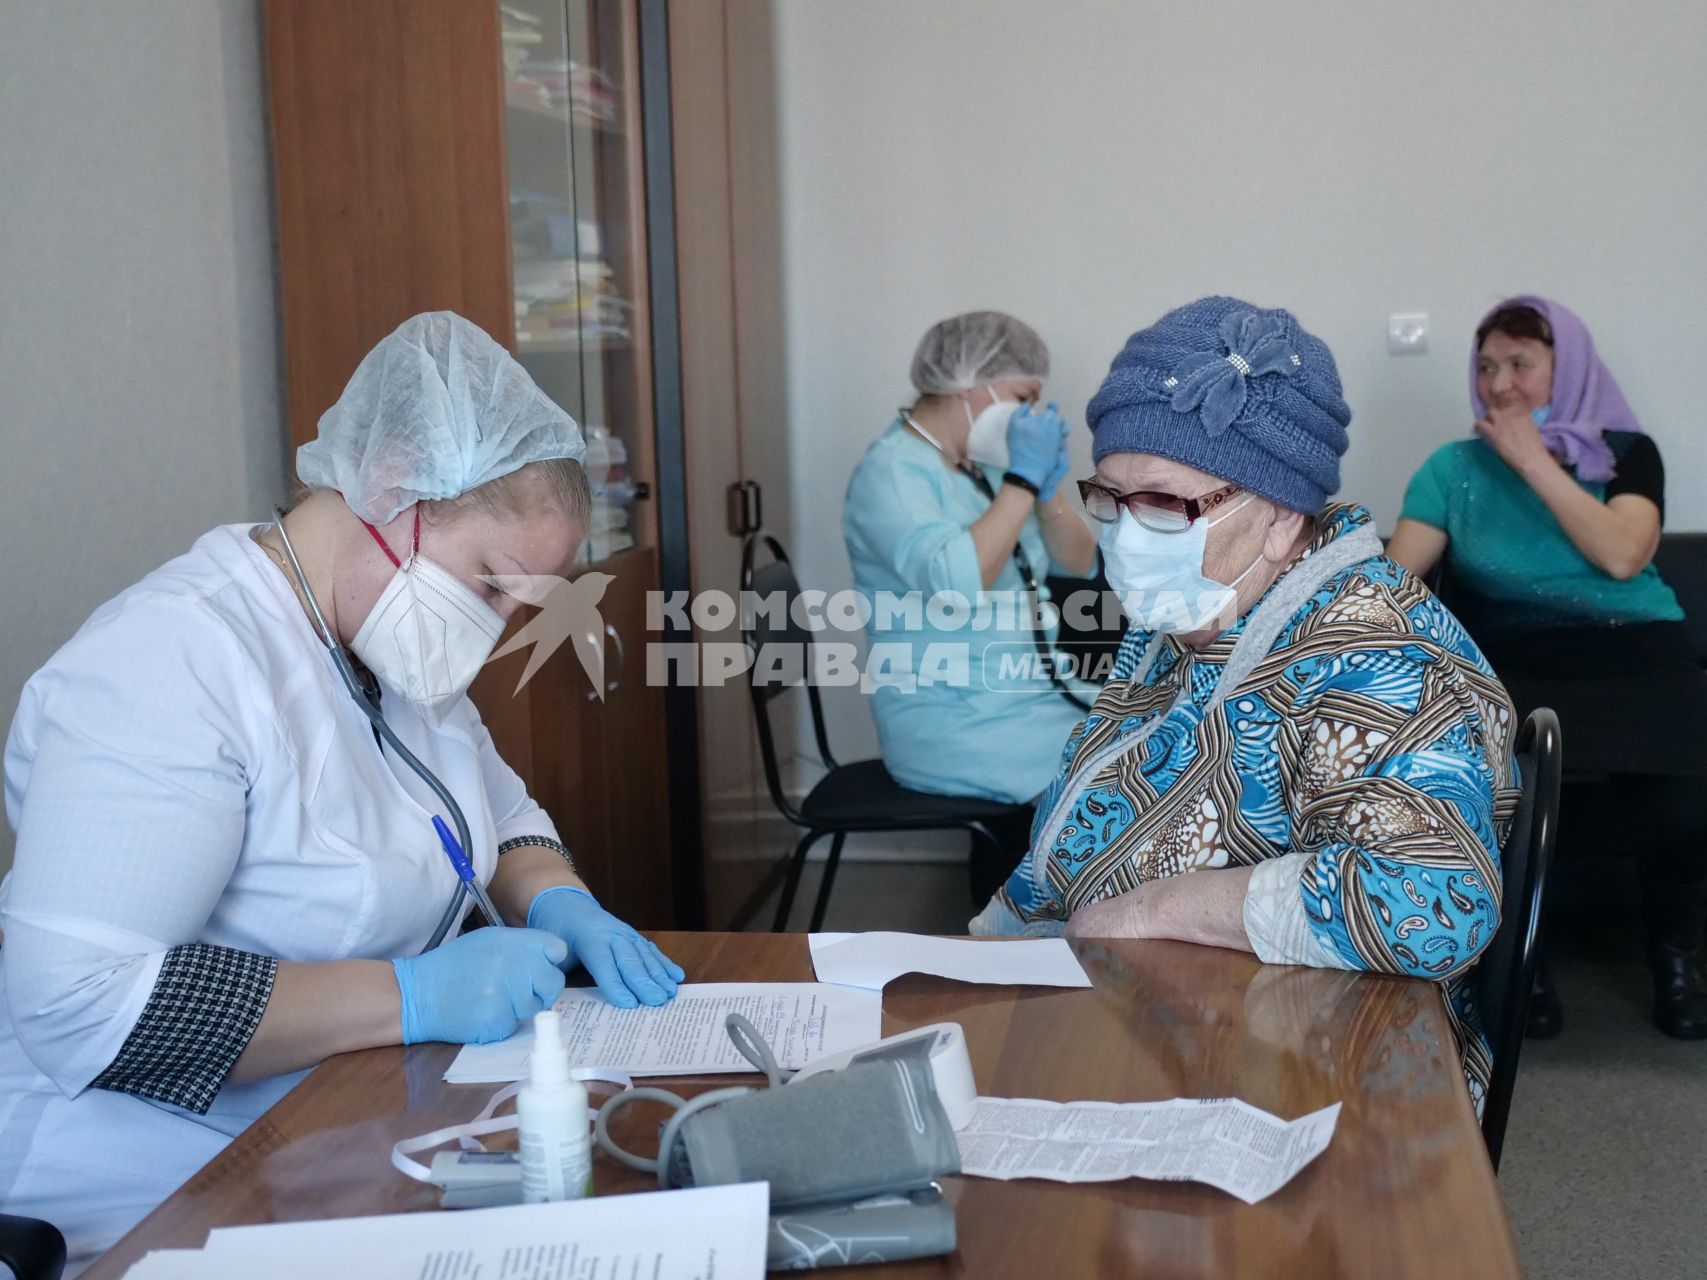 Самарская область, с. Рождествено.   Врач осматривает женщину перед вакцинацией от коронавирусной инфекции в поликлинике.